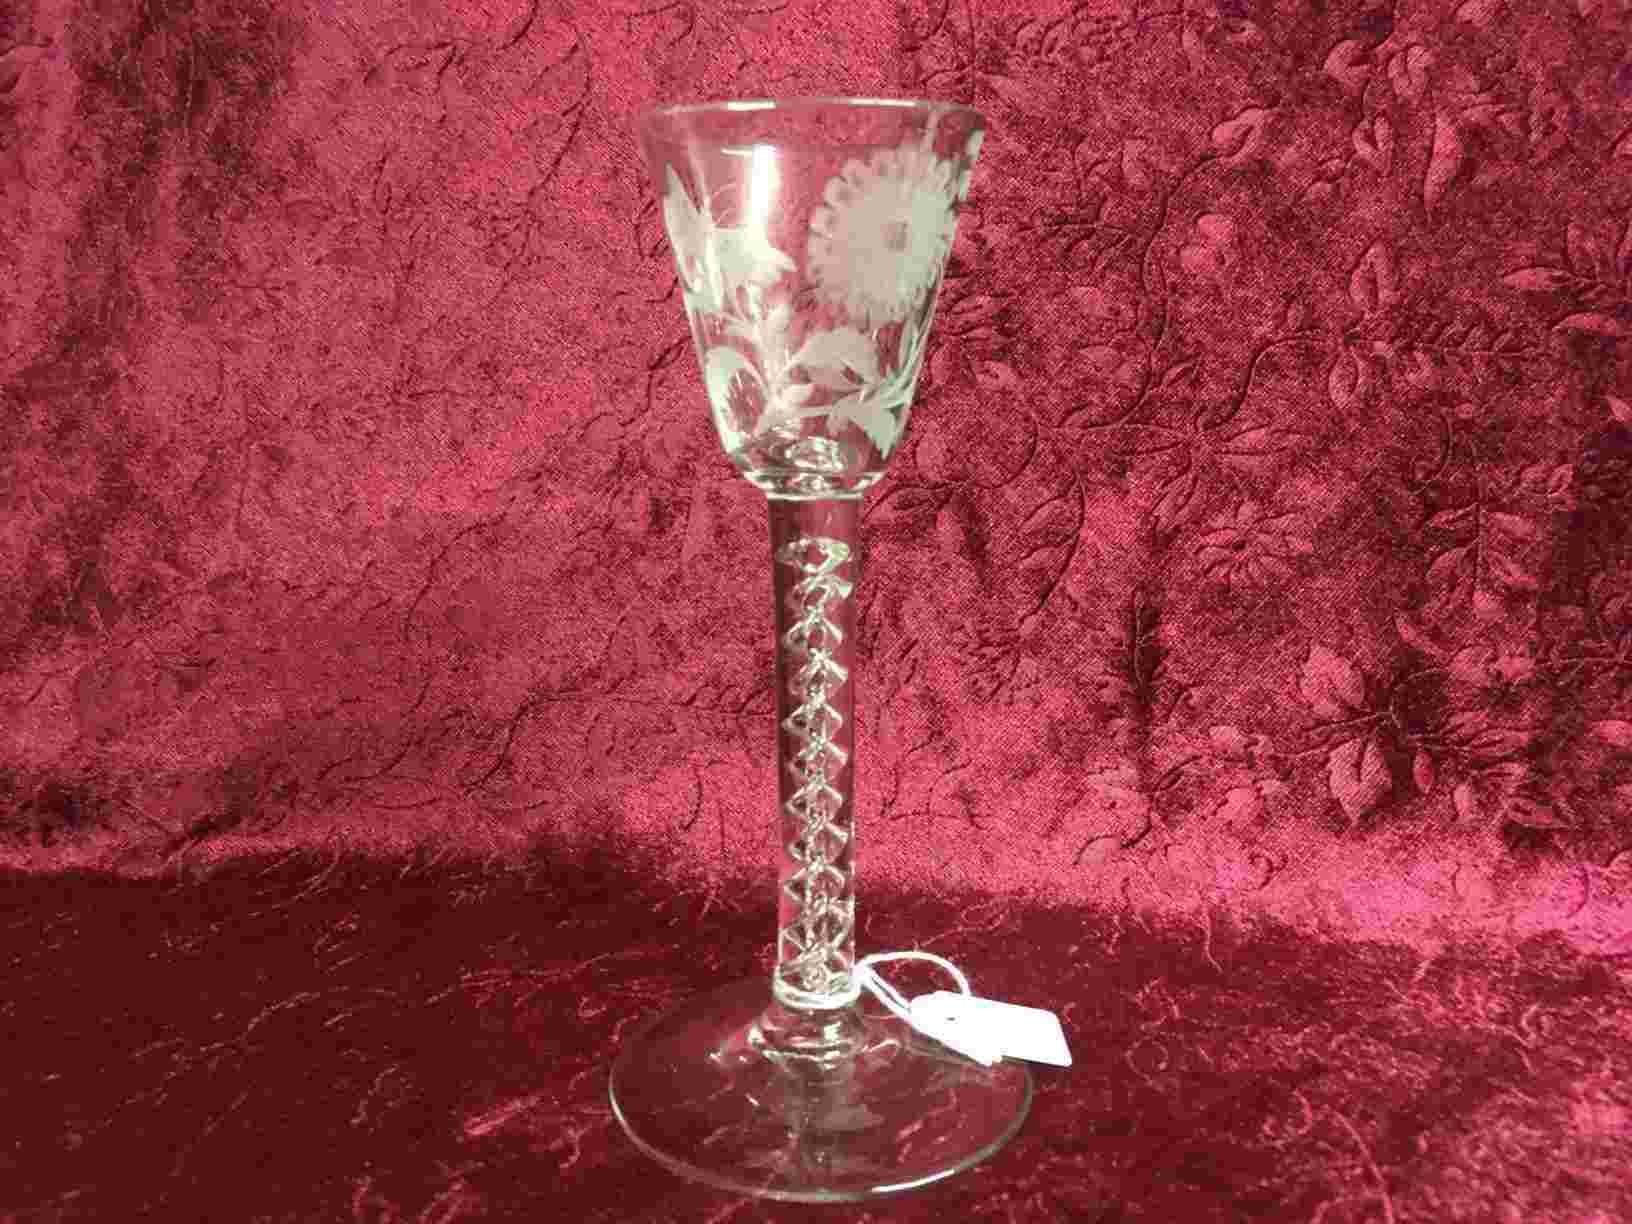 Kopi af dram glas fra 1700-tallet, høj stilk med indvendig snoning, luftspiraler, glat kumme med ætsninger. Et smukt glas, der har taget tid og kundskaber at producere. Perfekt stand. Pris: 350,- Kr.